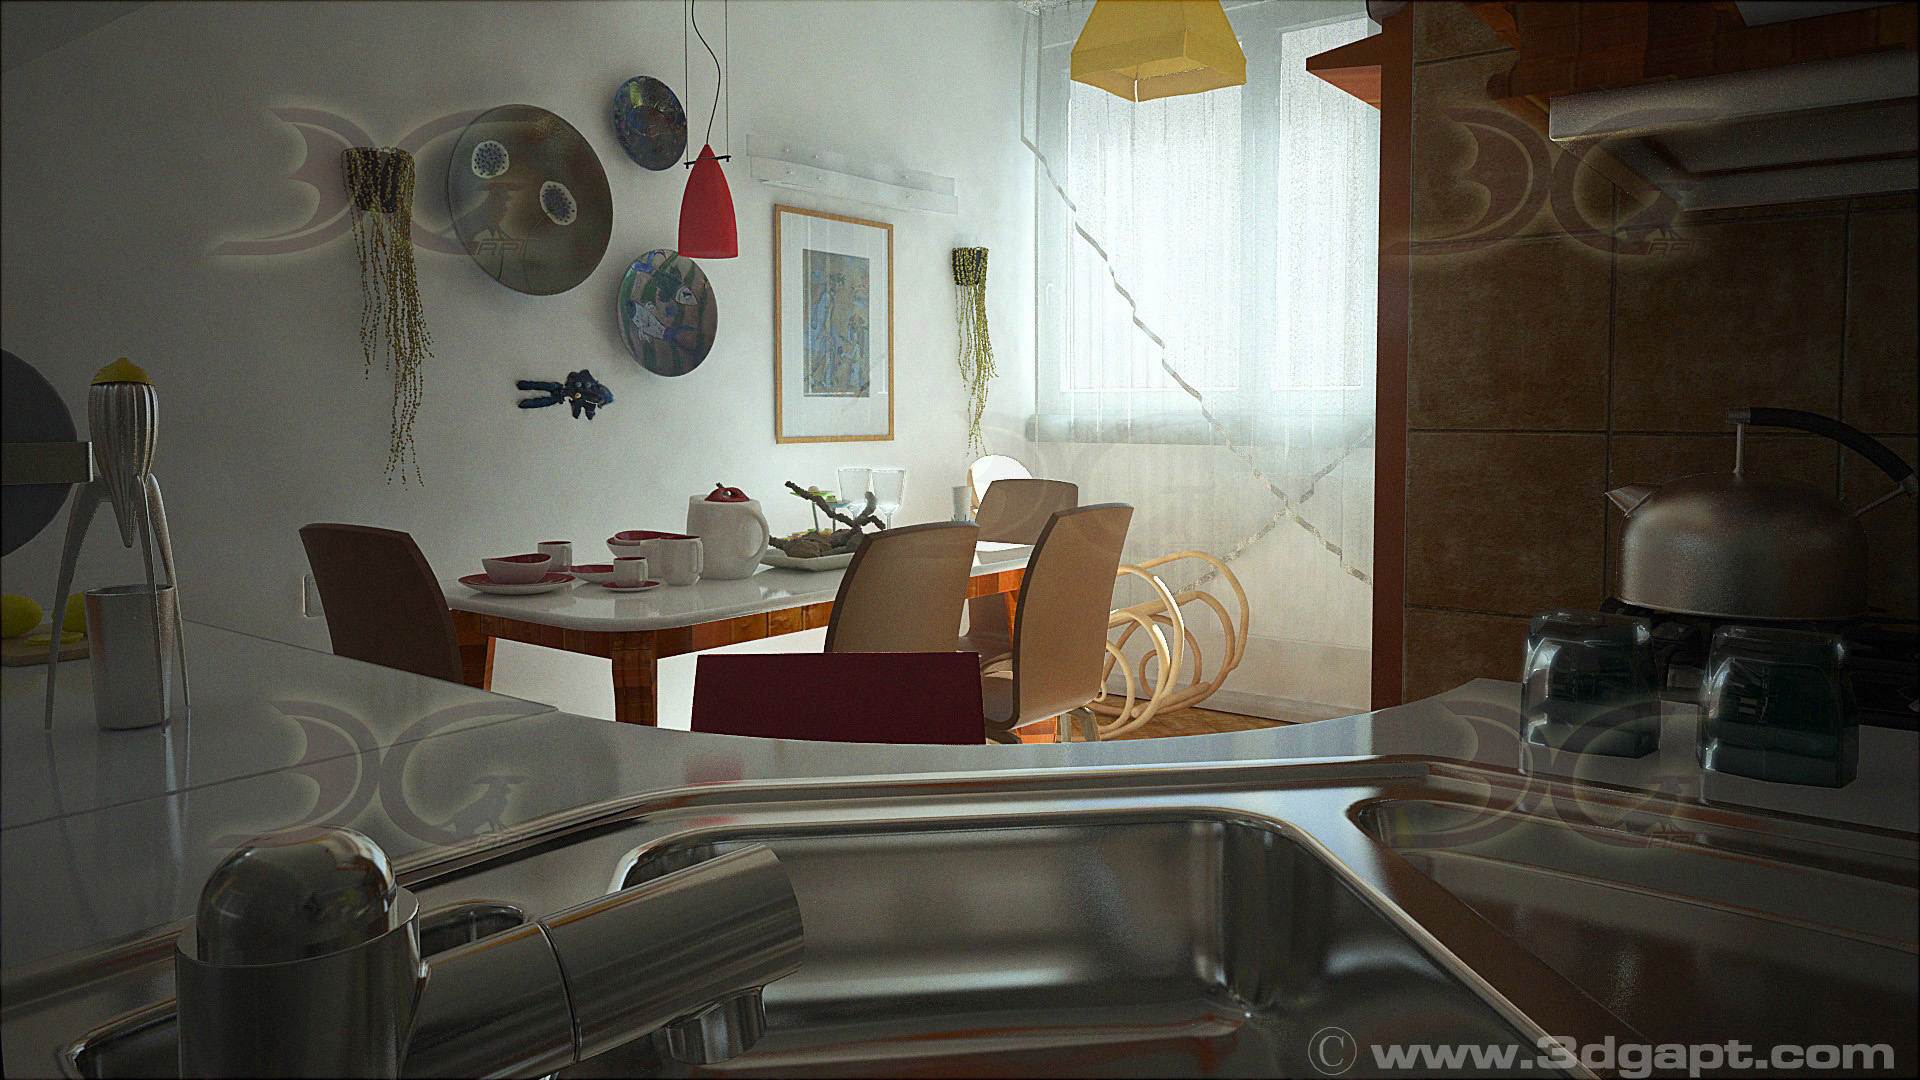 architecture interior kitchen-3versions 21